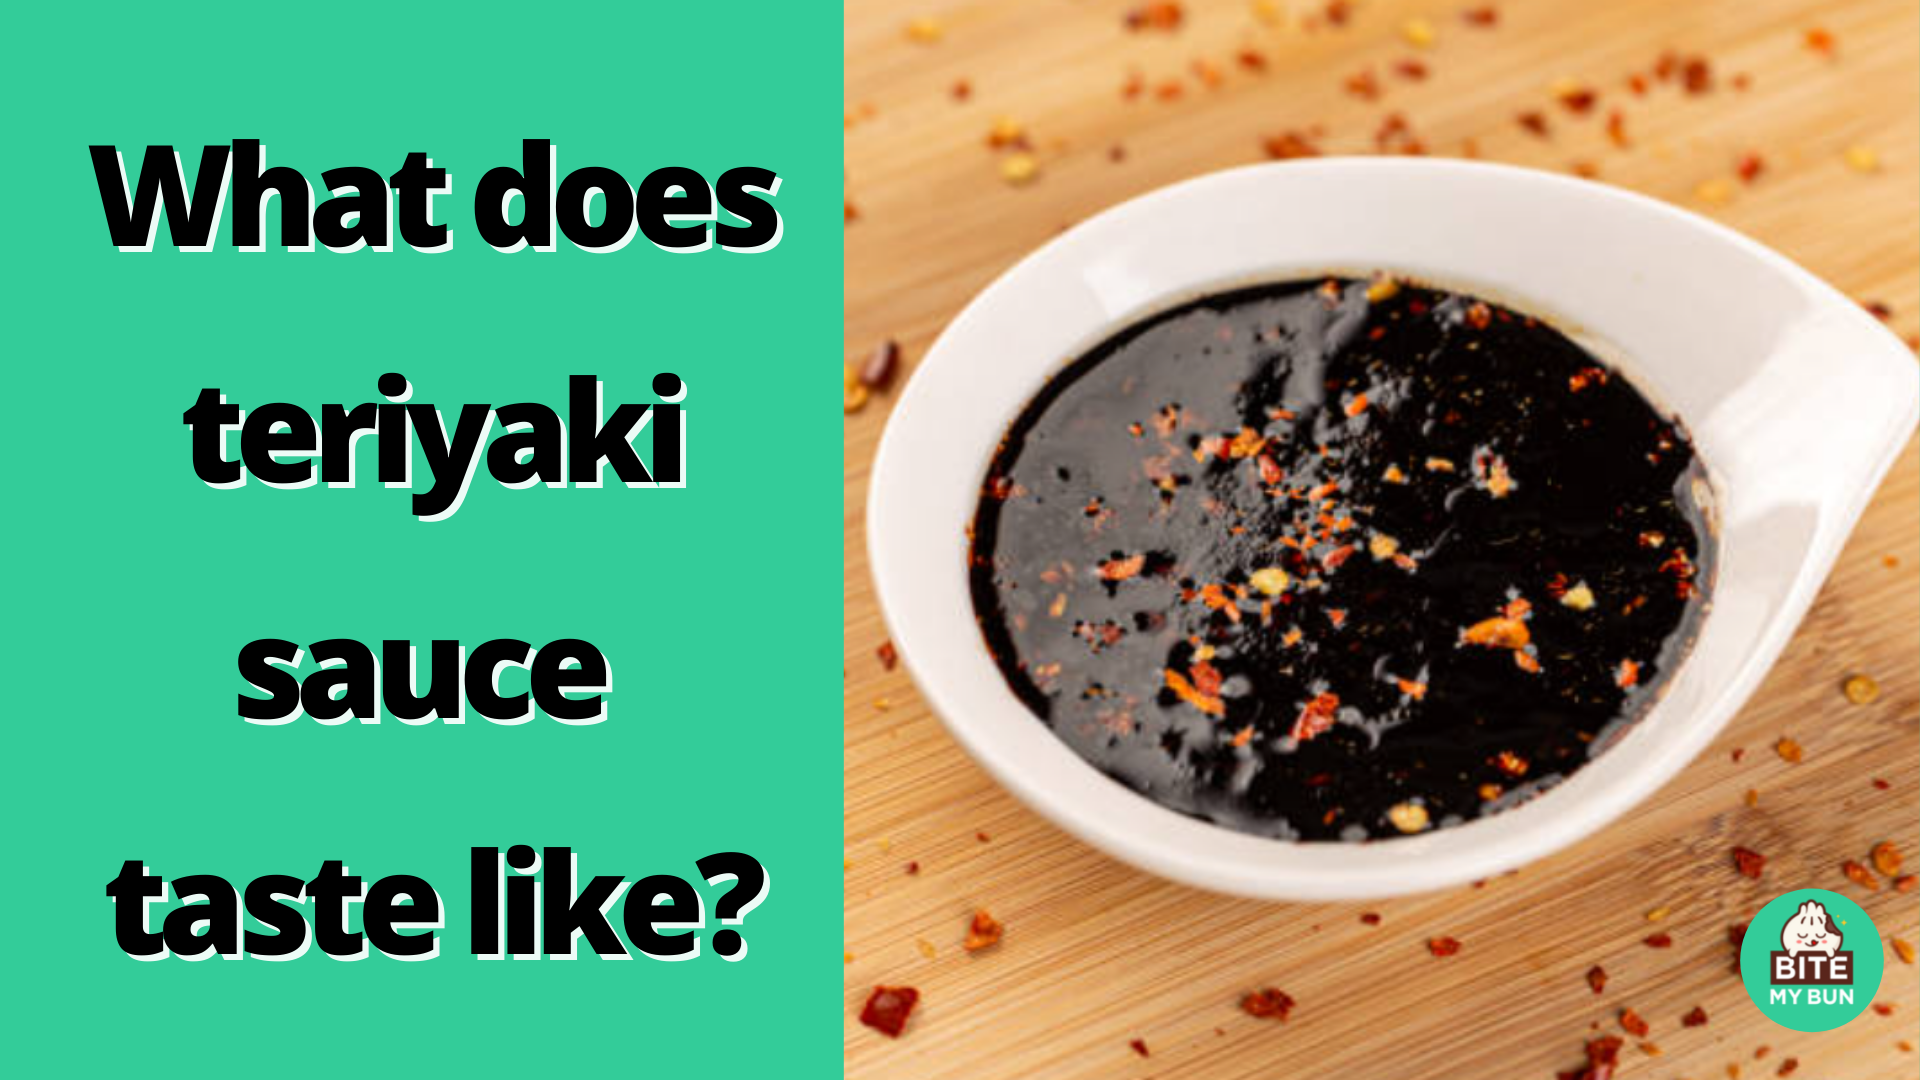 Hur smakar teriyakisås? Låt mig beskriva smaken